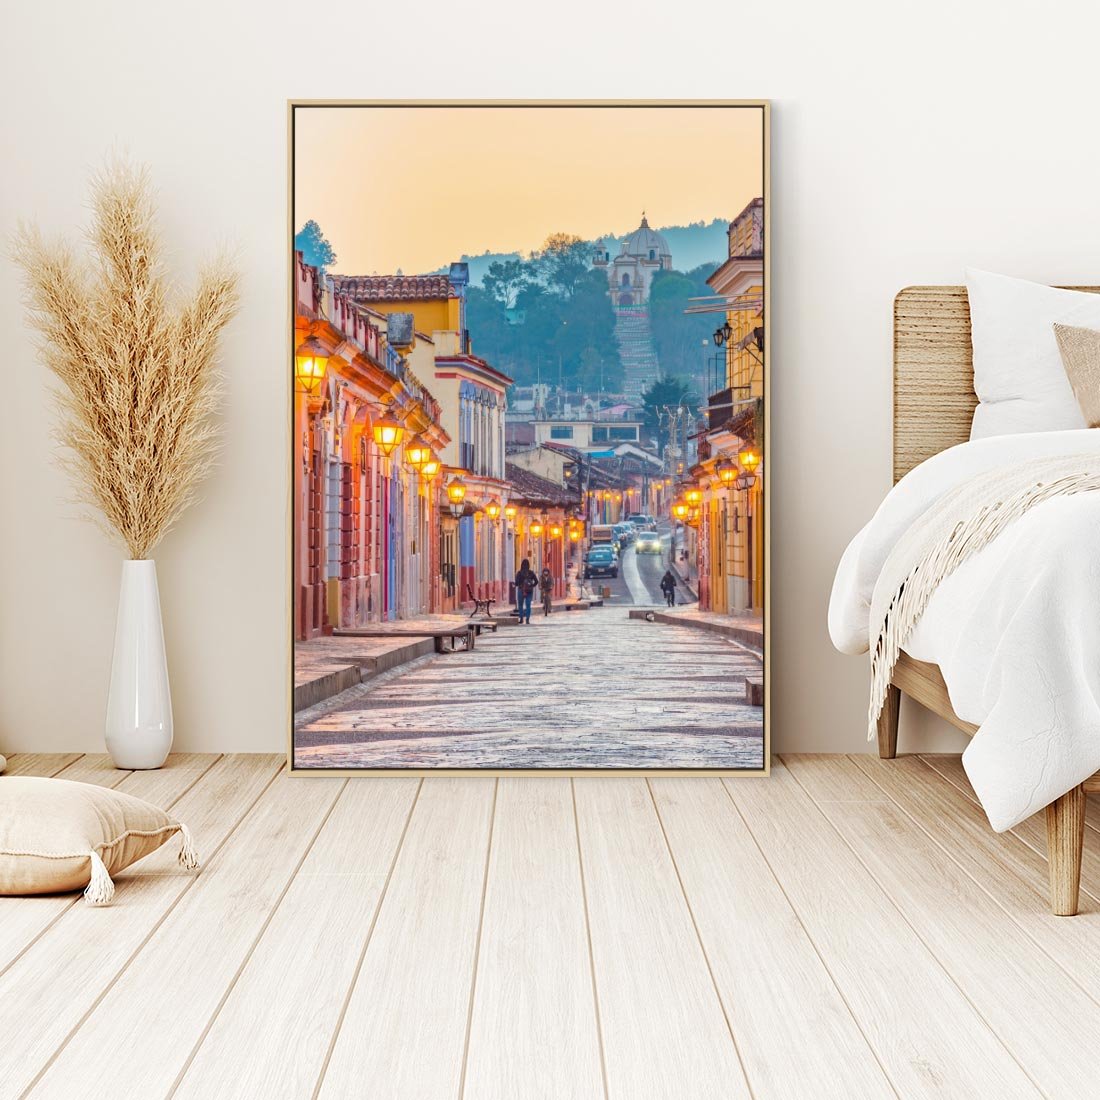 Obraz w ramie 50x70 - W stronę marzycielskich horyzontów - włoska uliczka, wieczór - rama drewno